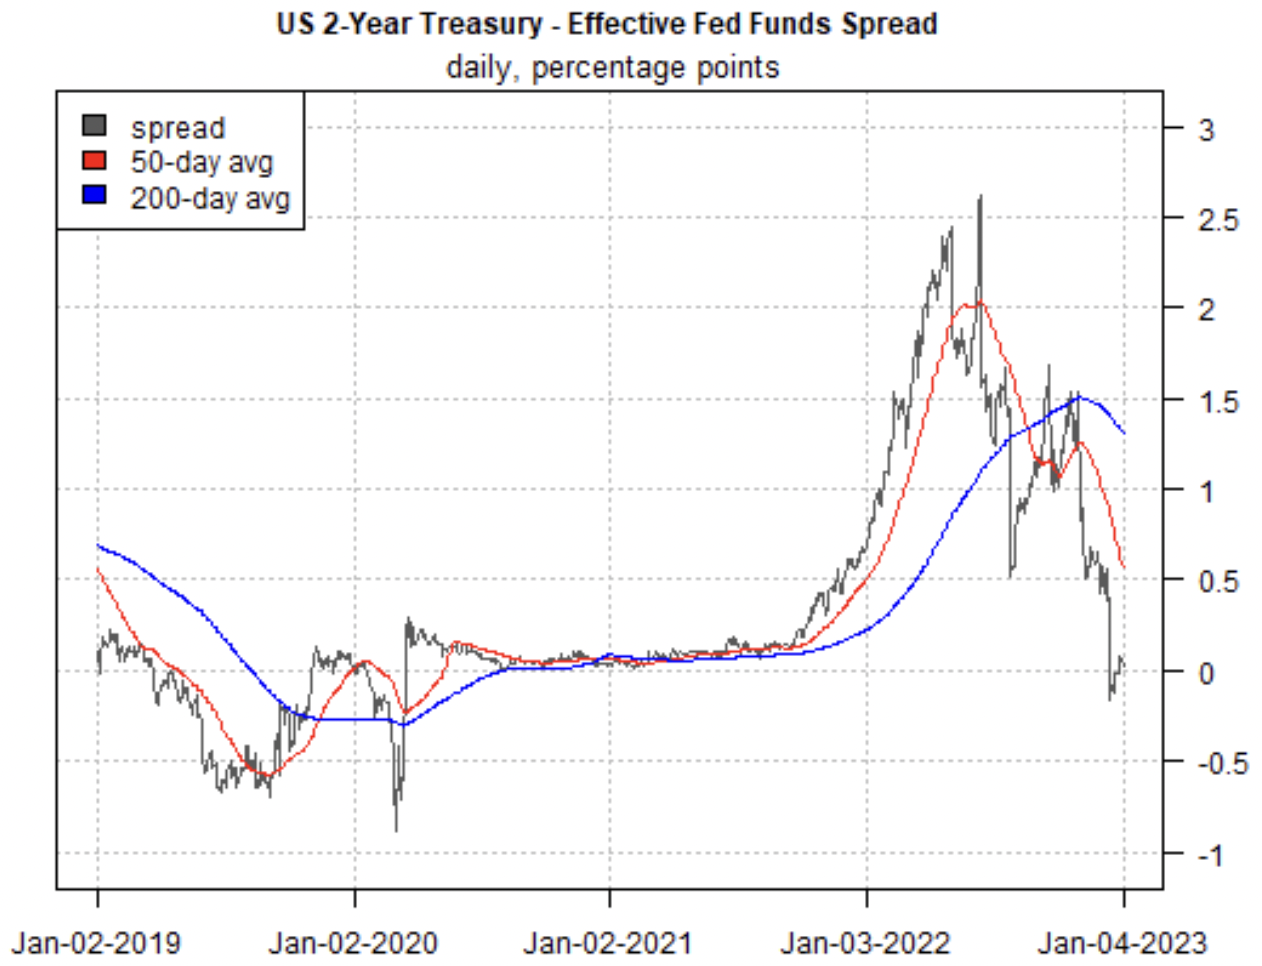 Rendite 2-jähriger US-Treasuries minus Fed Funds Rate